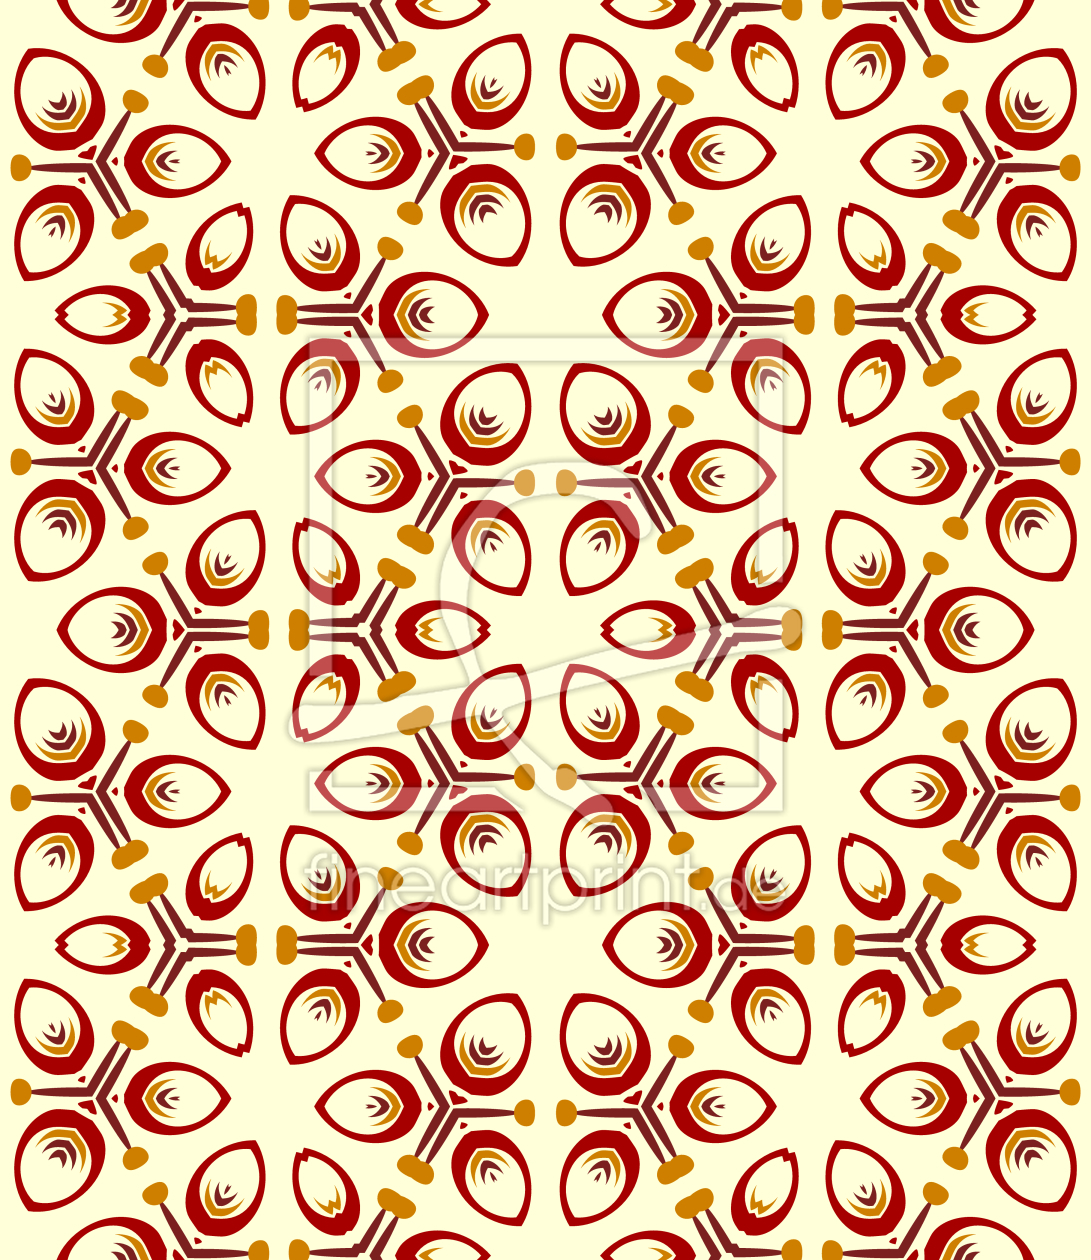 Bild-Nr.: 9014747 Im Dreierrythmus erstellt von patterndesigns-com